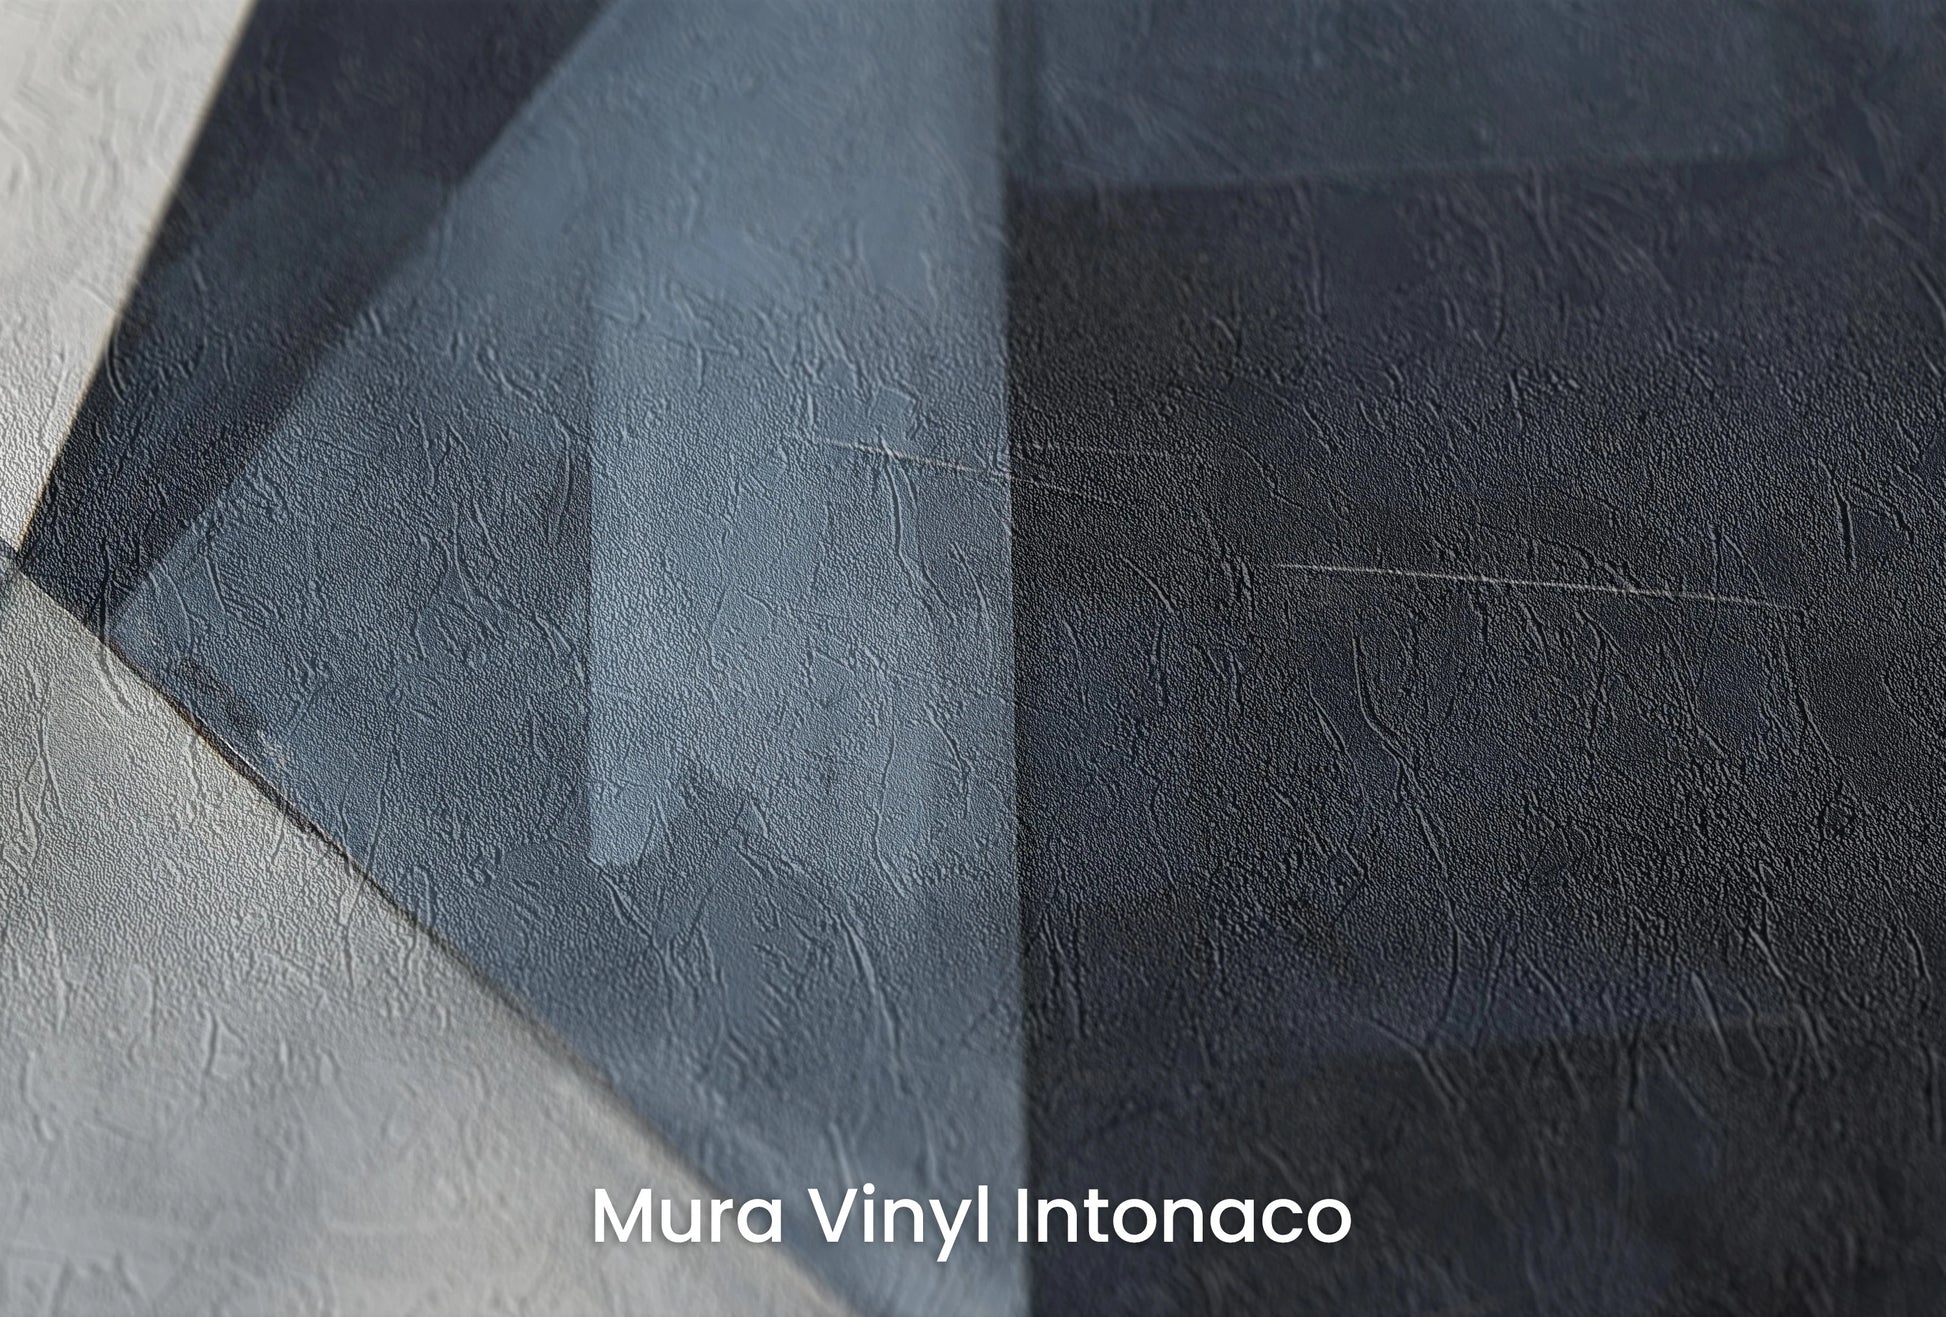 Zbliżenie na artystyczną fototapetę o nazwie Monochrome Motion na podłożu Mura Vinyl Intonaco - struktura tartego tynku.